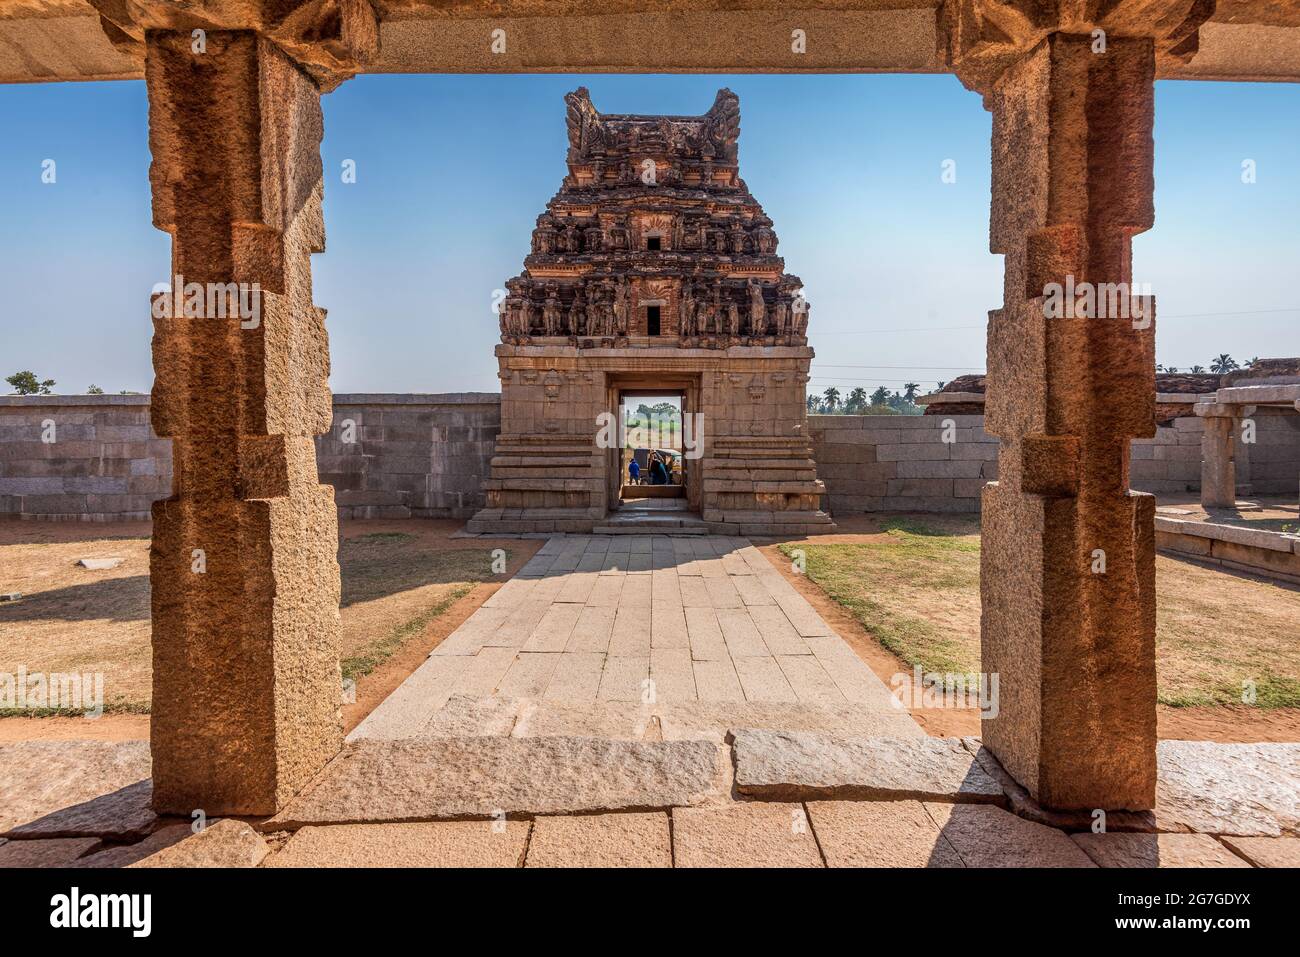 Templo Chandrasekhara, Patrimonio de la Humanidad de la UNESCO, situado en las ruinas de la antigua ciudad Vijayanagar en Hampi, Karnataka, India Foto de stock